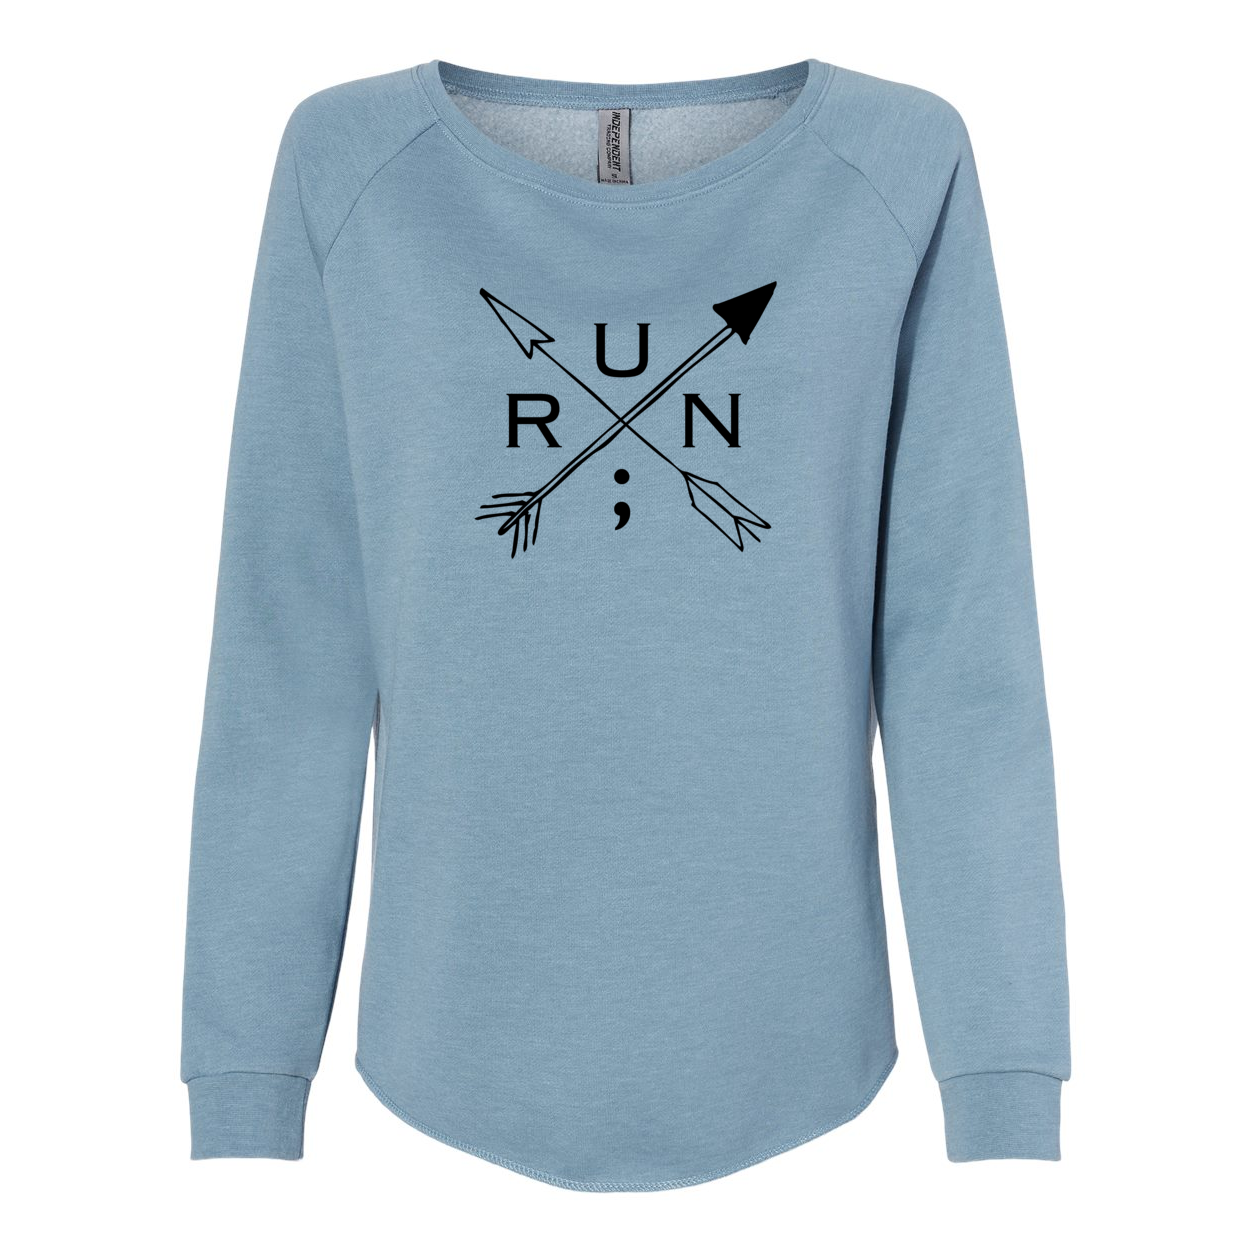 Run Arrows - Flared Crewneck Sweatshirt